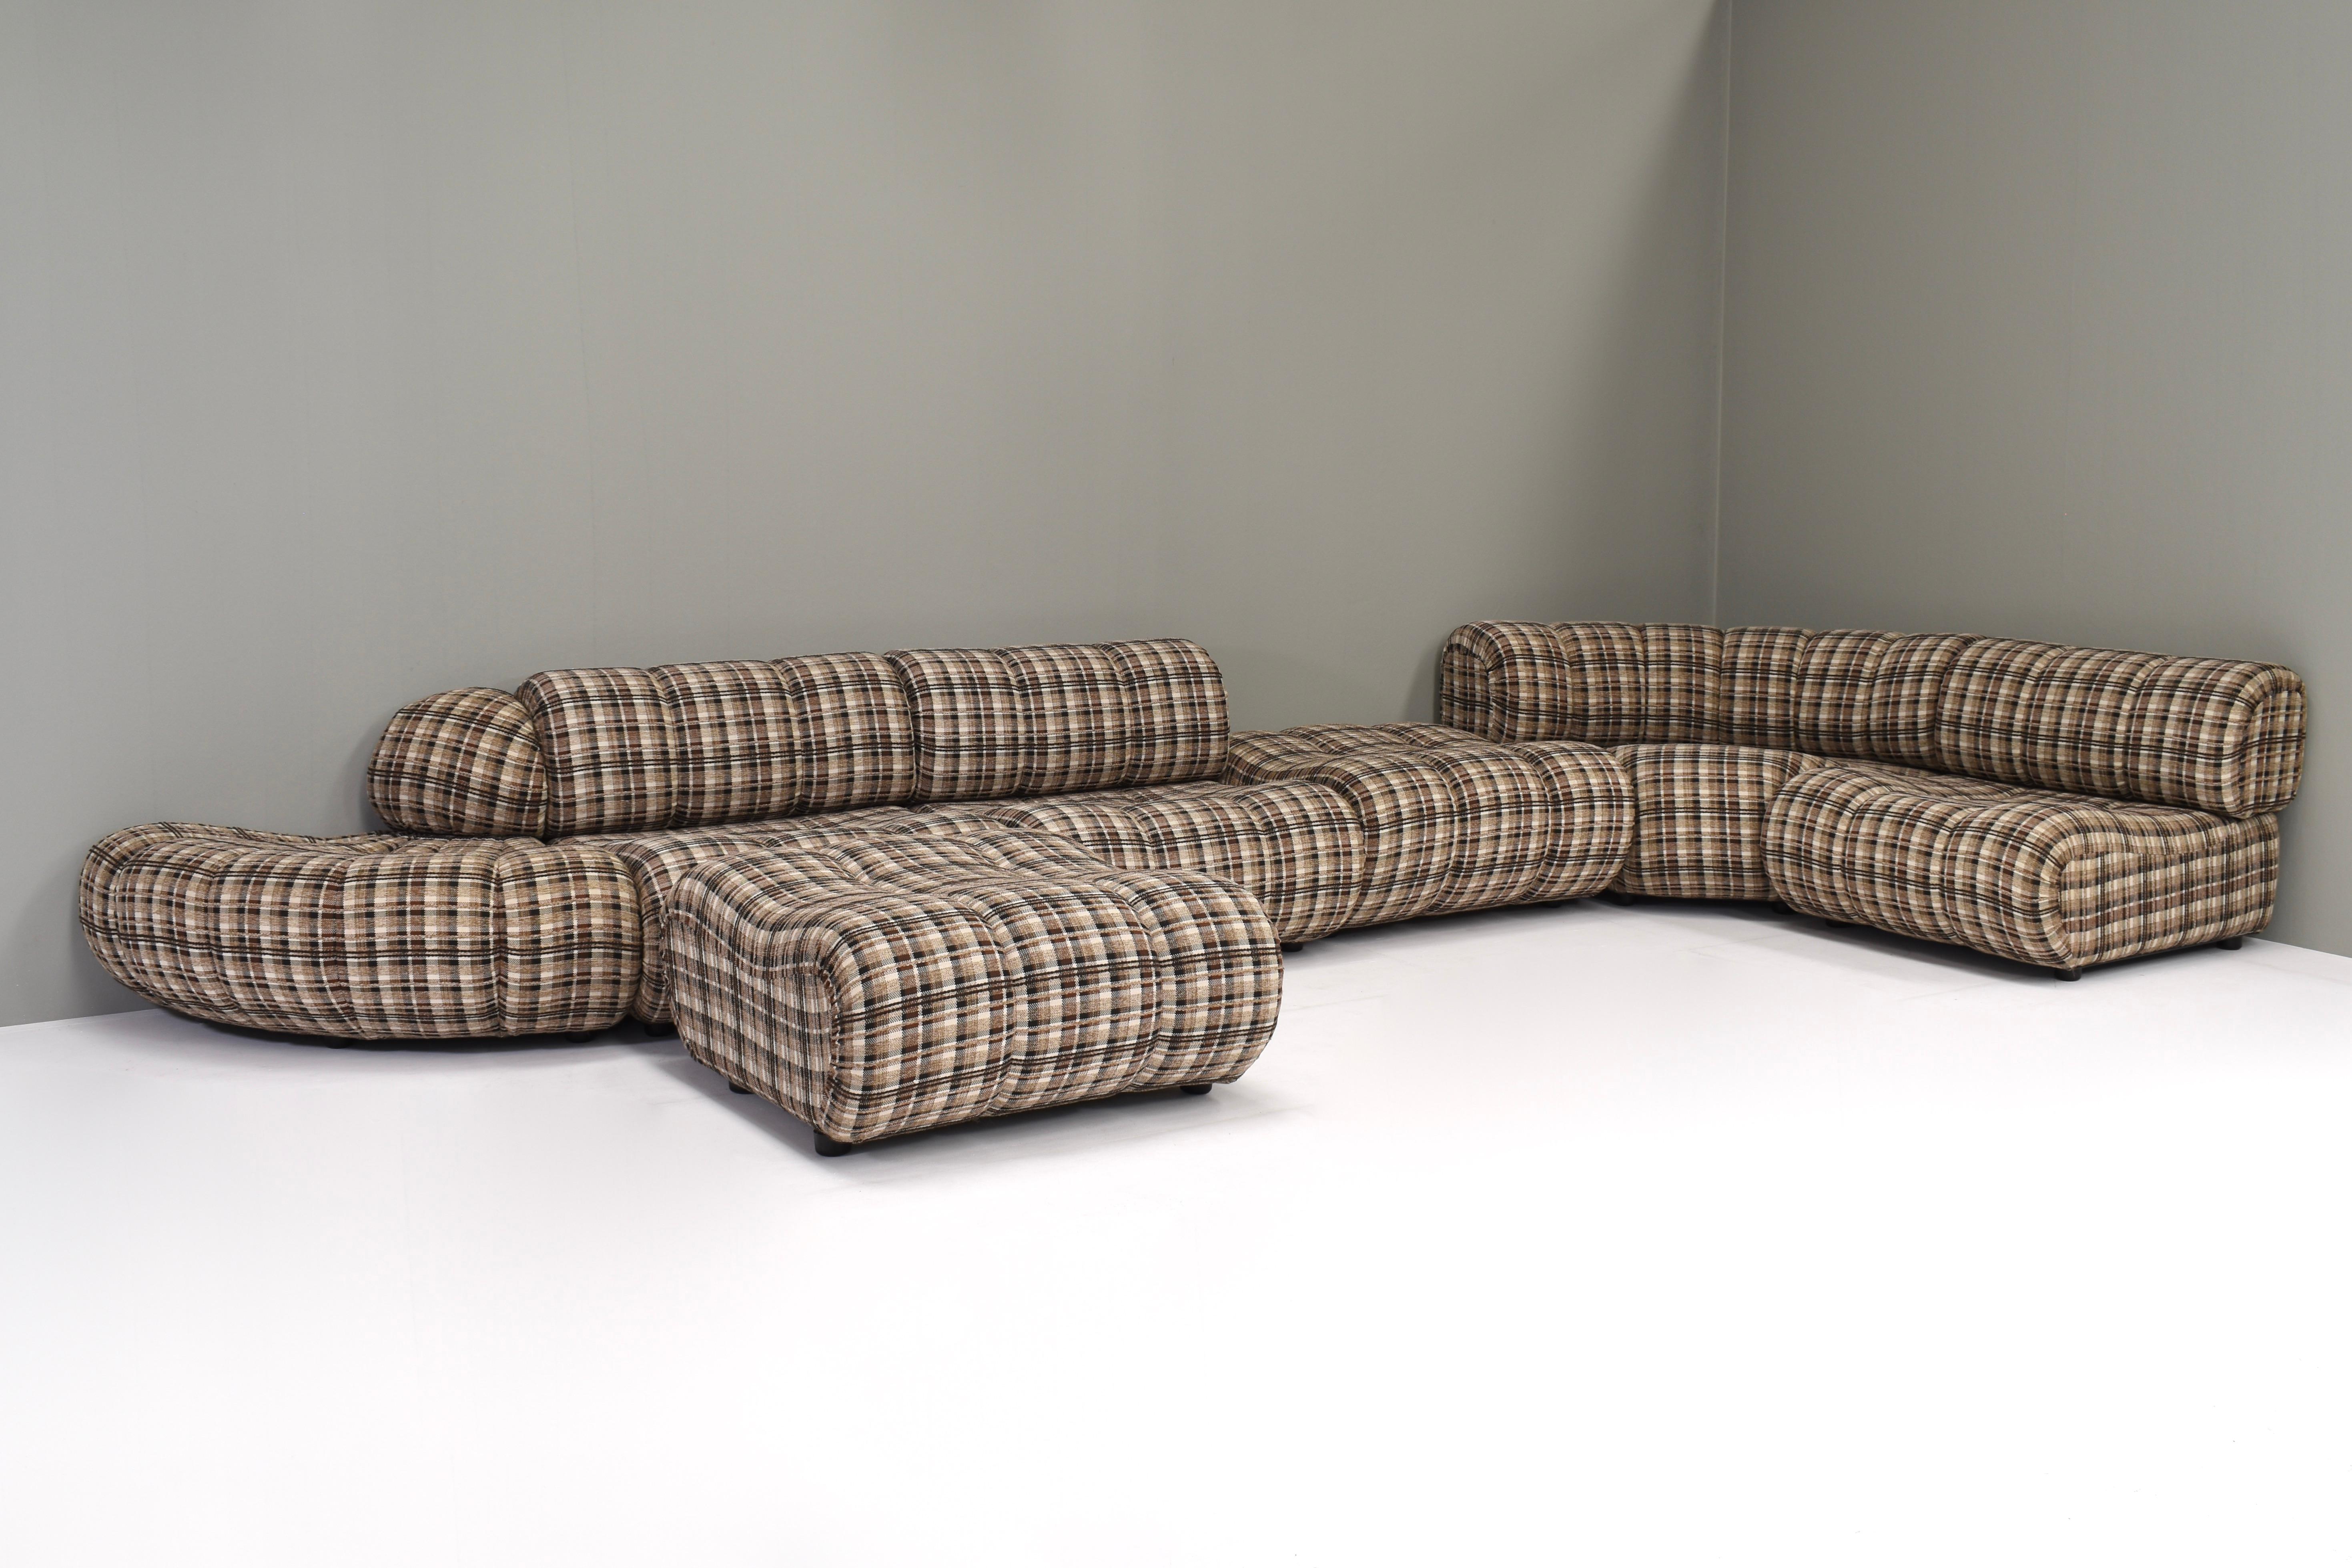 Seltenes Sektionssofa von Giuseppe Munari für Poltrona Munari, Italien um 1970.
Dieses Sofa besteht aus 7 Elementen, die nach Belieben in verschiedenen Aufstellungen arrangiert werden können.
Der Stoff ist noch original und besteht aus einem